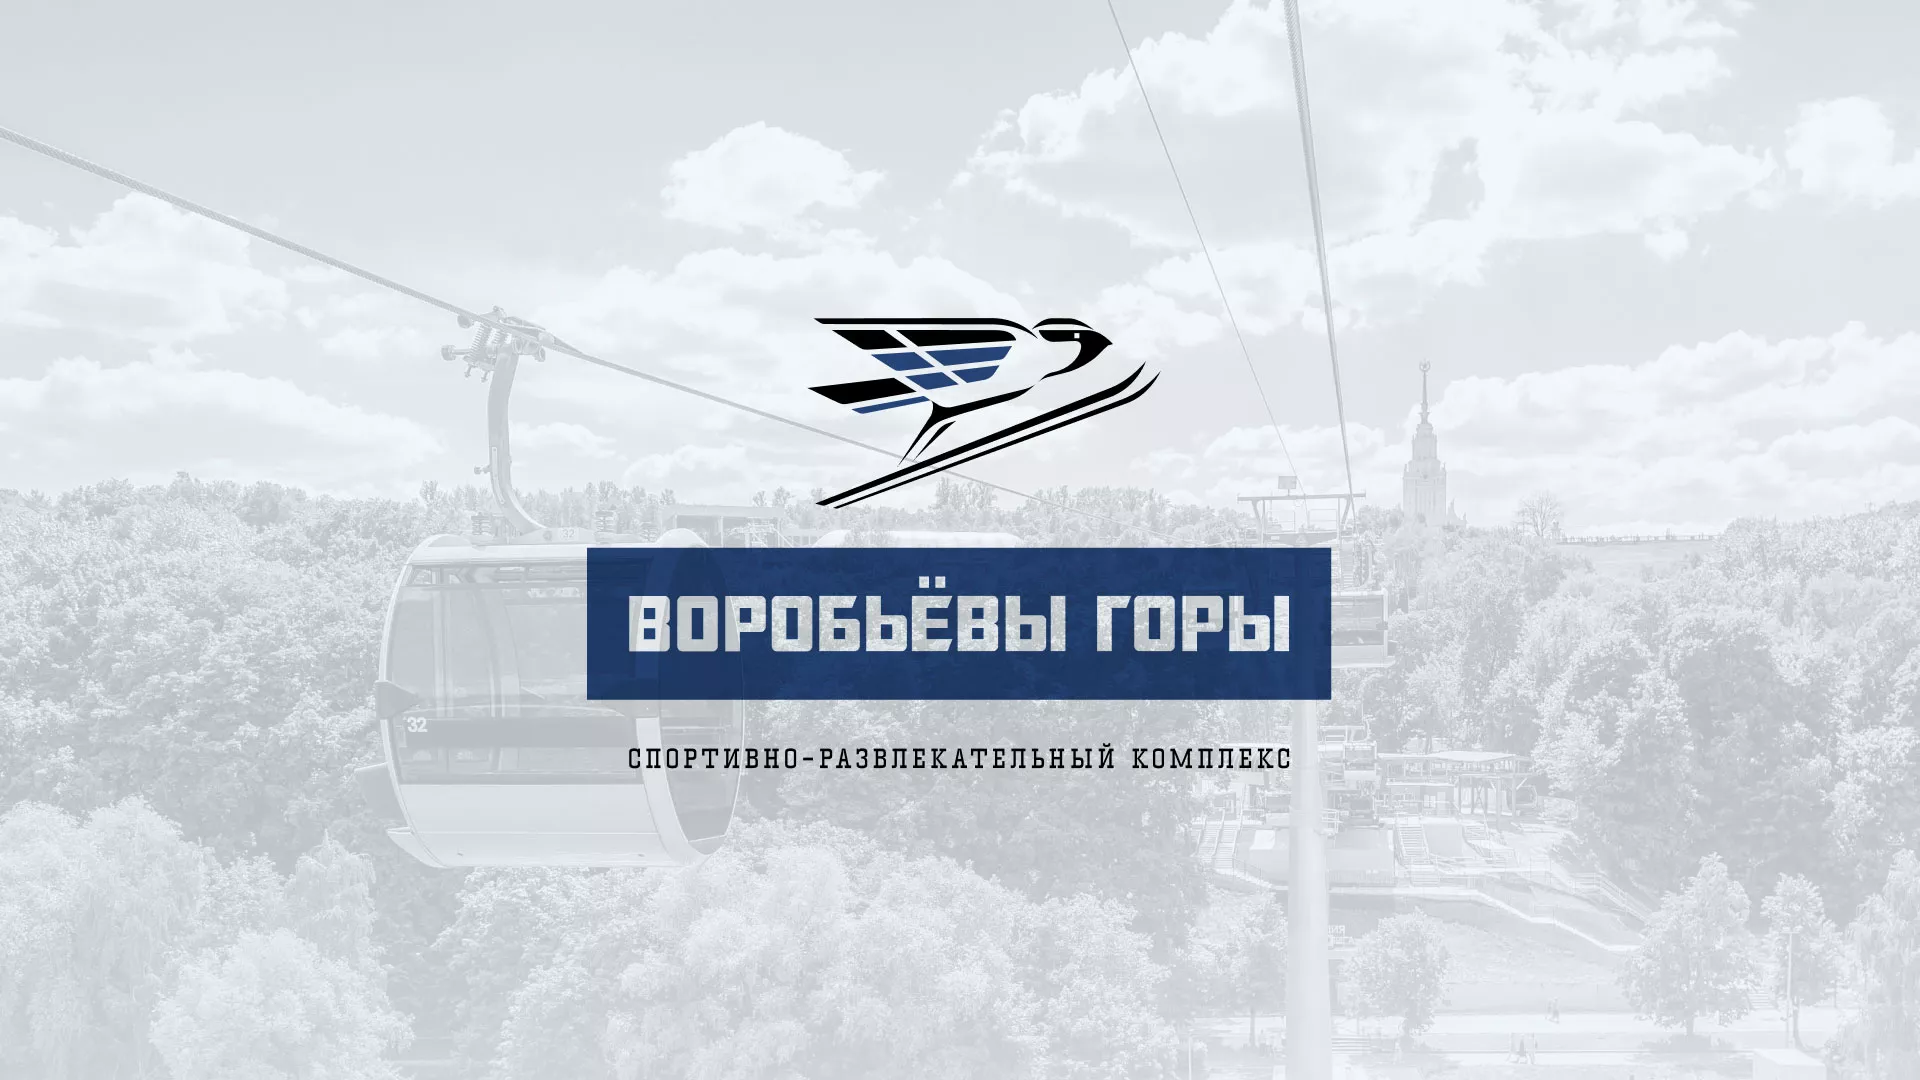 Разработка сайта в Оханске для спортивно-развлекательного комплекса «Воробьёвы горы»